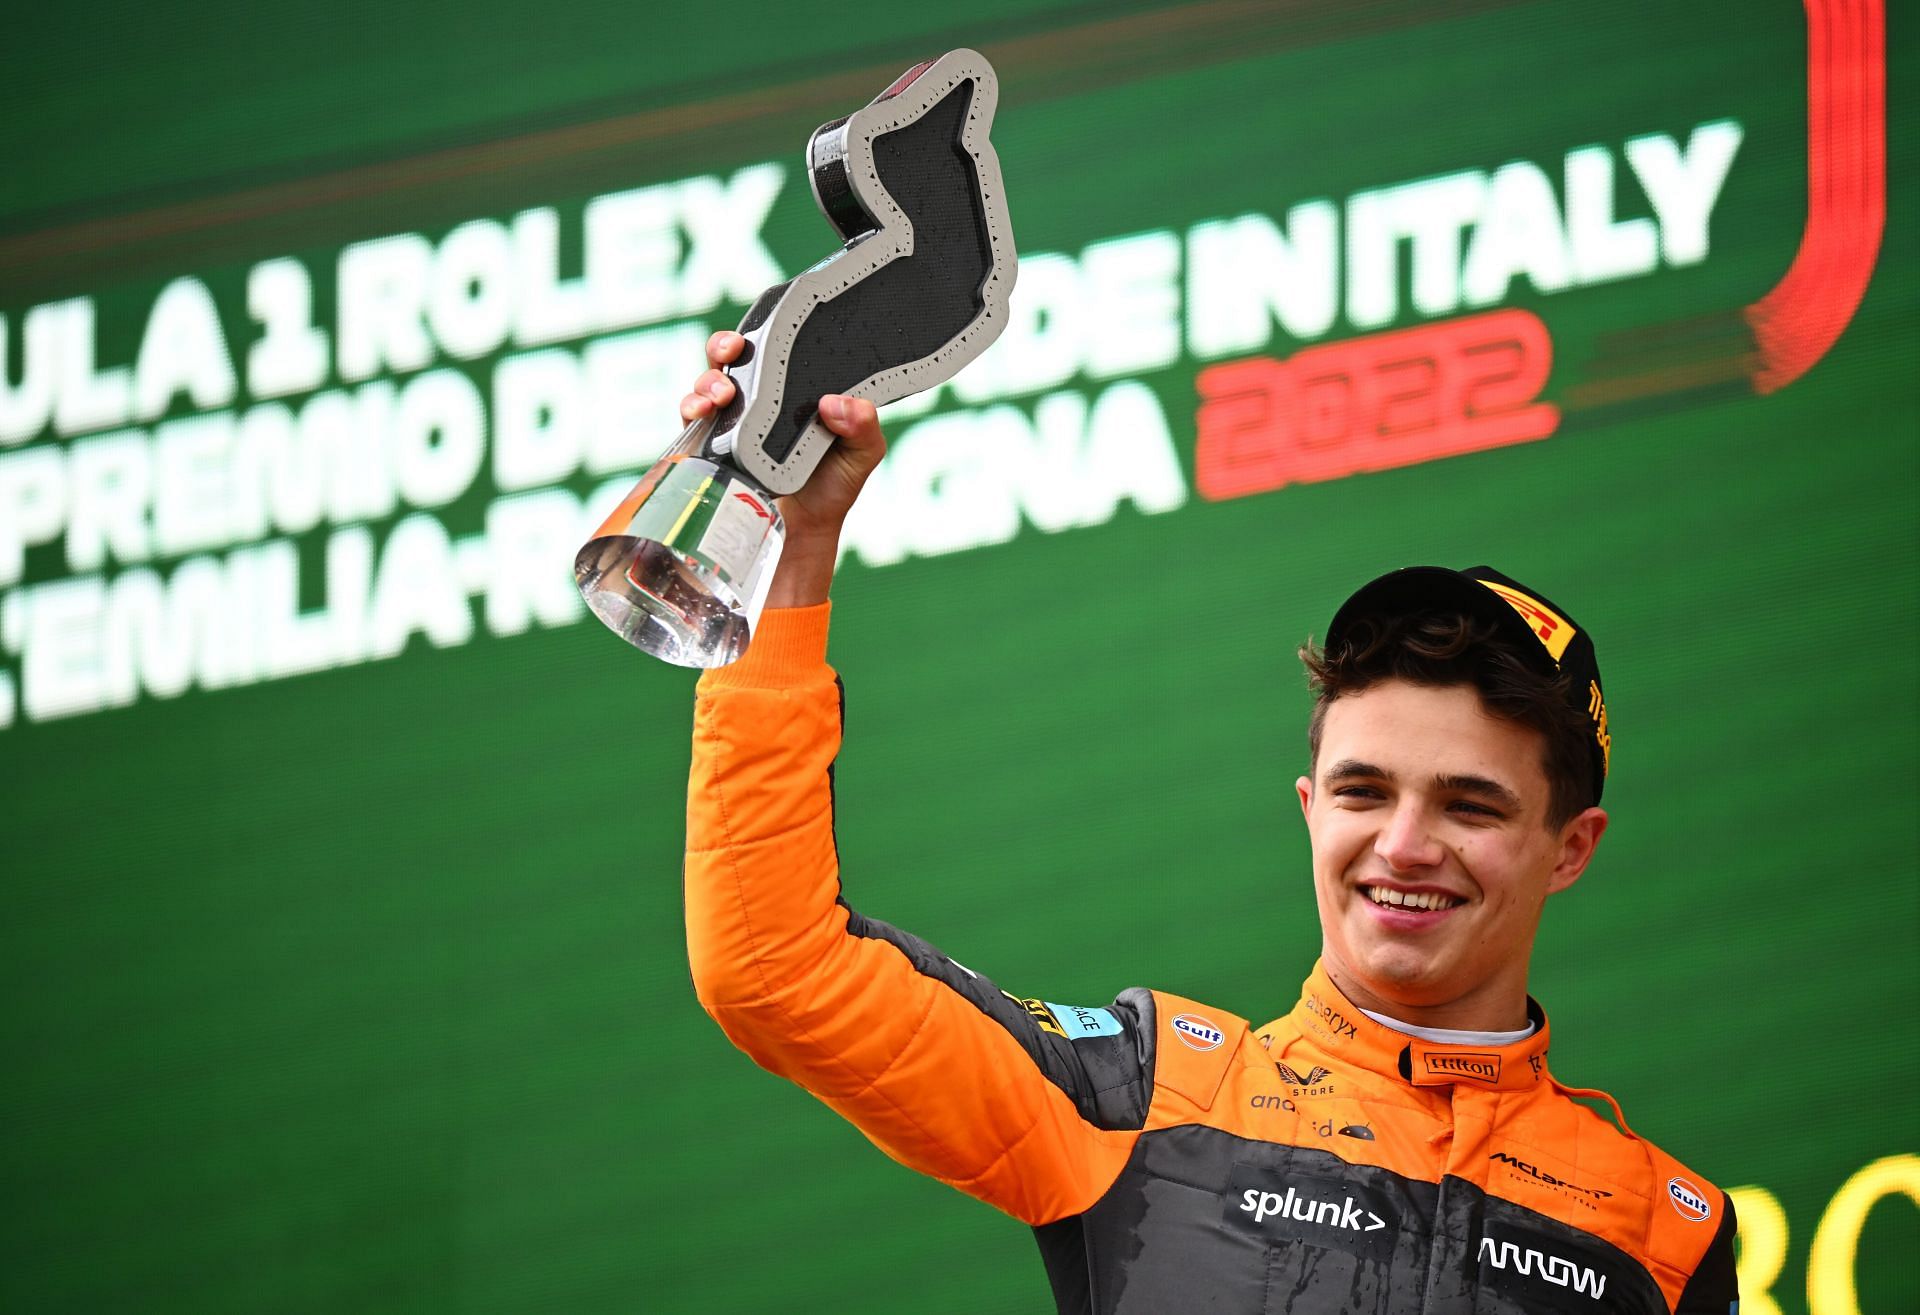 Lando Norris secures third place at the F1 Grand Prix of Emilia Romagna